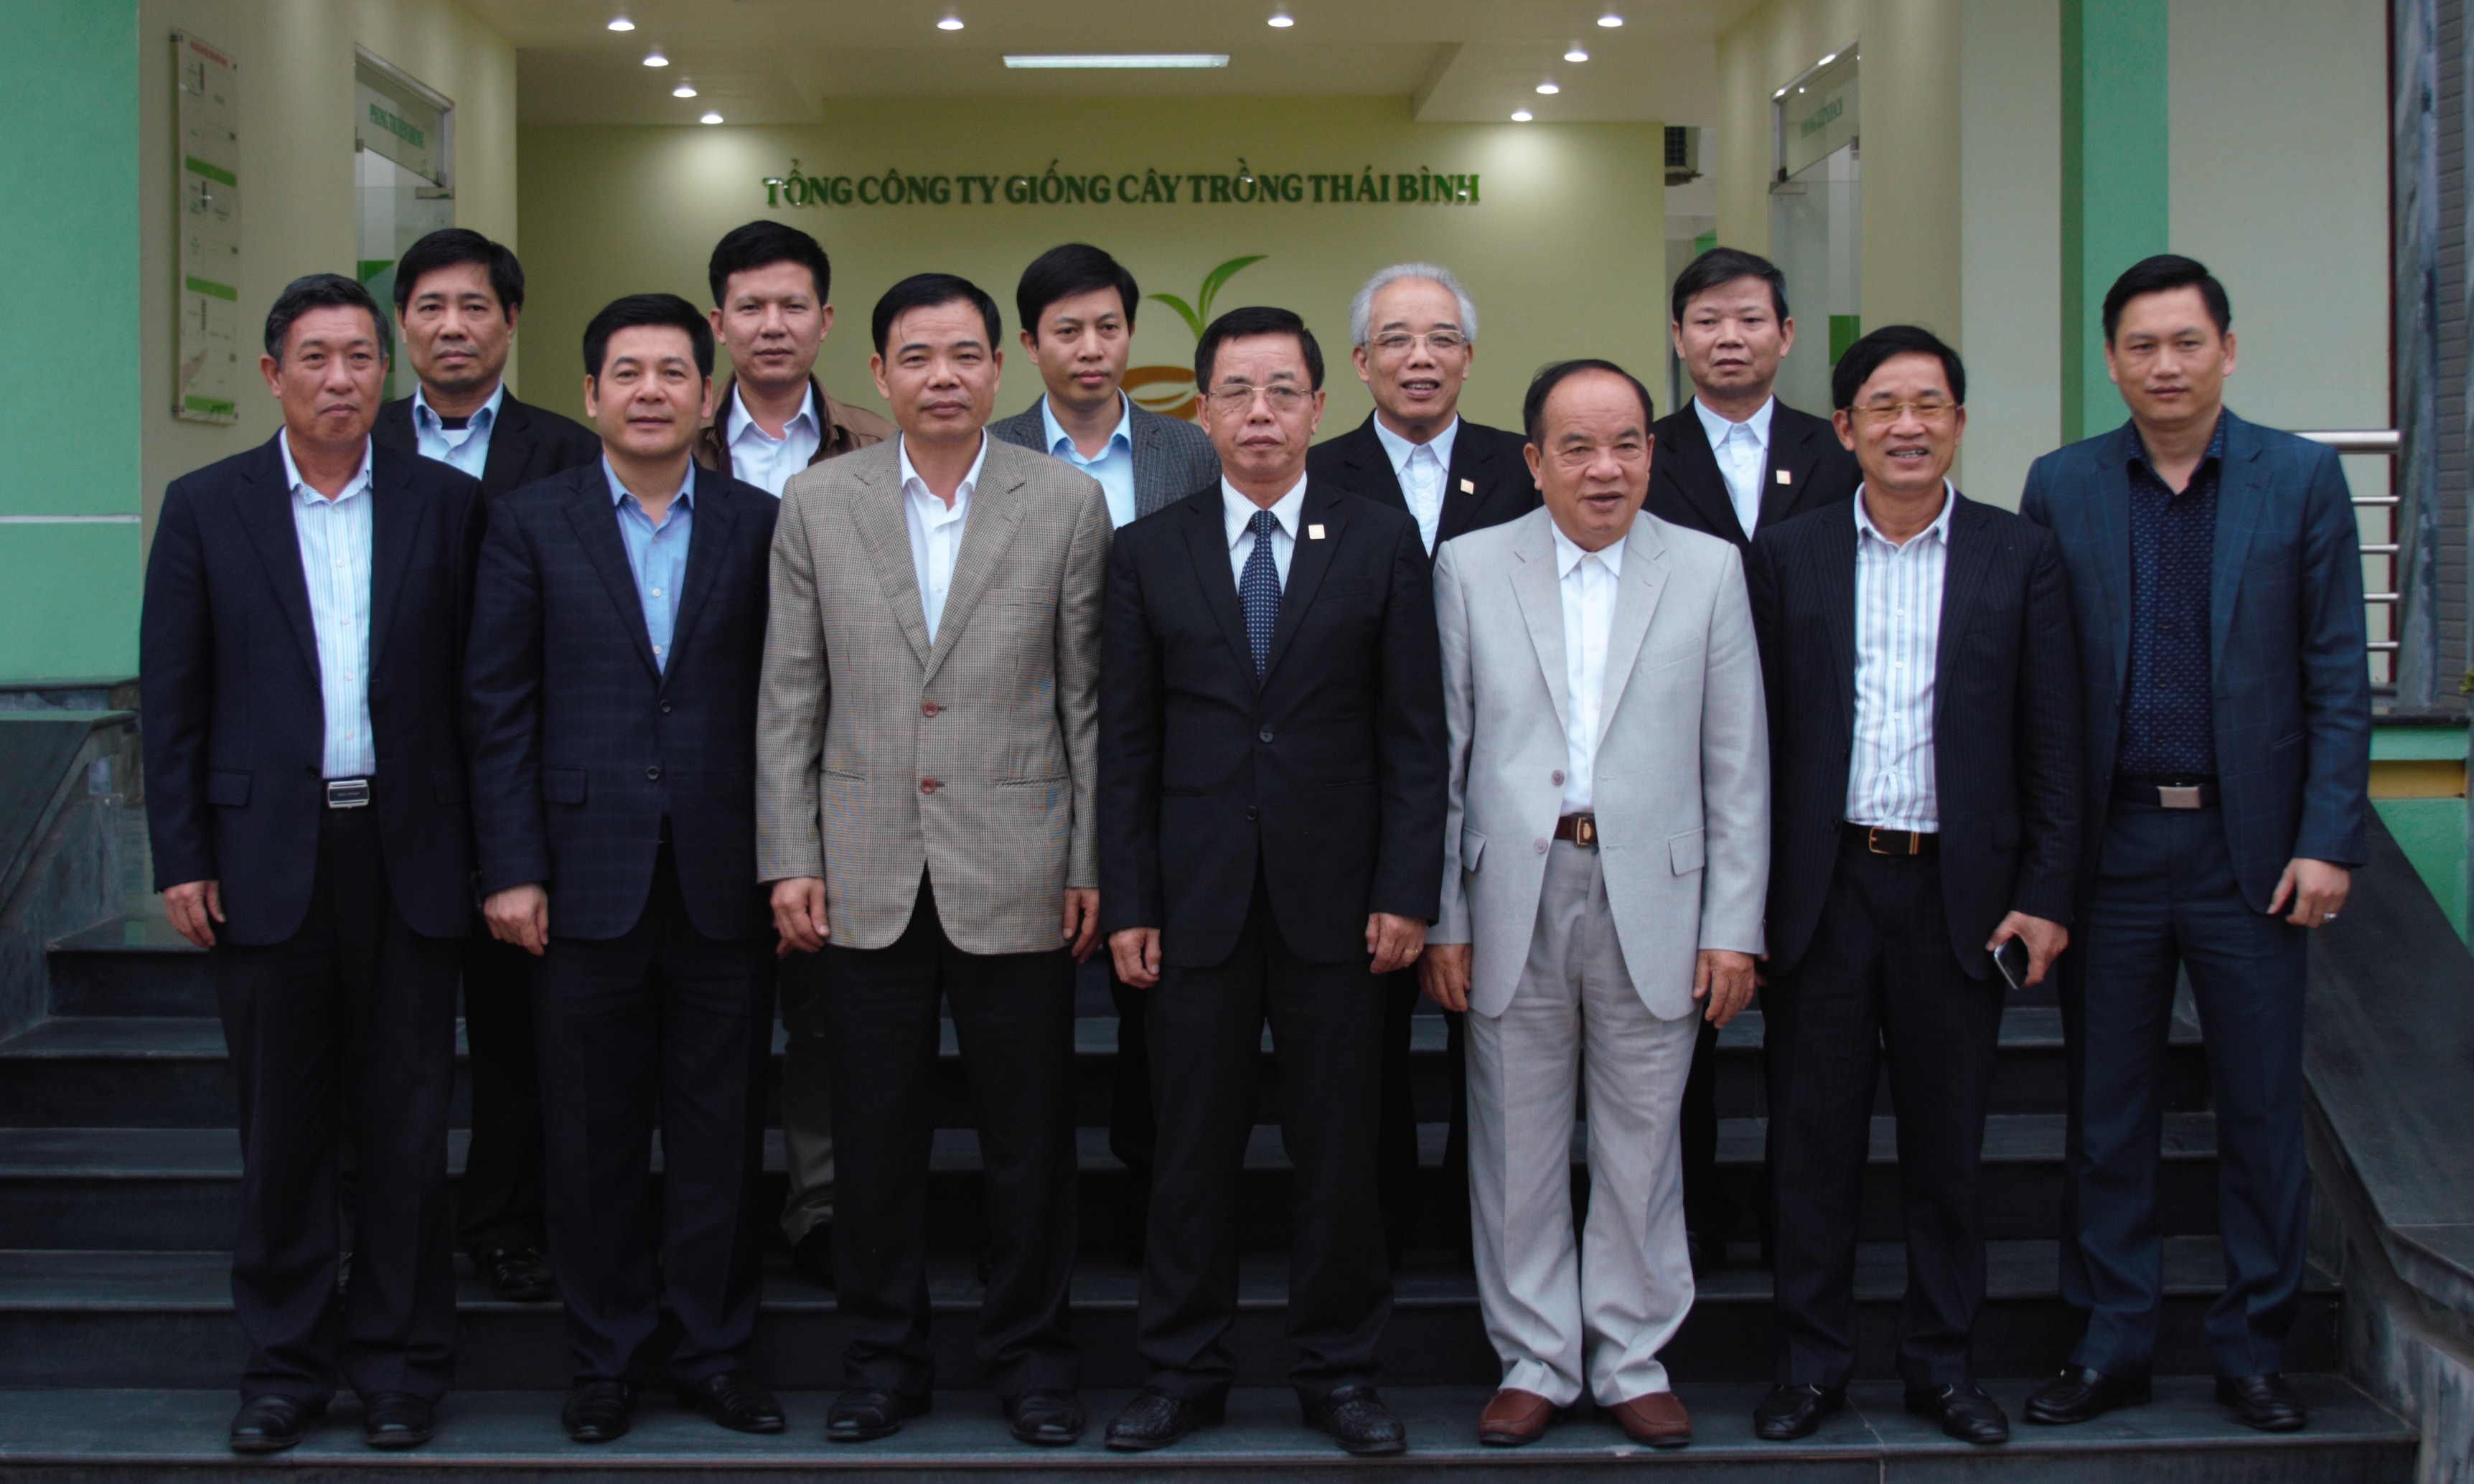 Nguyên Bộ trưởng Bộ NN-PTNT Nguyễn Xuân Cường cùng Bộ trưởng Bộ Công thương Nguyễn Hồng Diên, khi đó là Chủ tịch UBND tỉnh Thái Bình tới thăm ThaiBinh Seed.